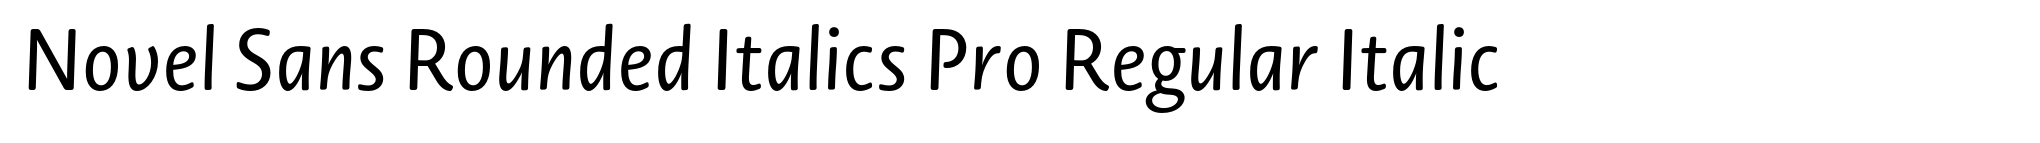 Novel Sans Rounded Italics Pro Regular Italic image